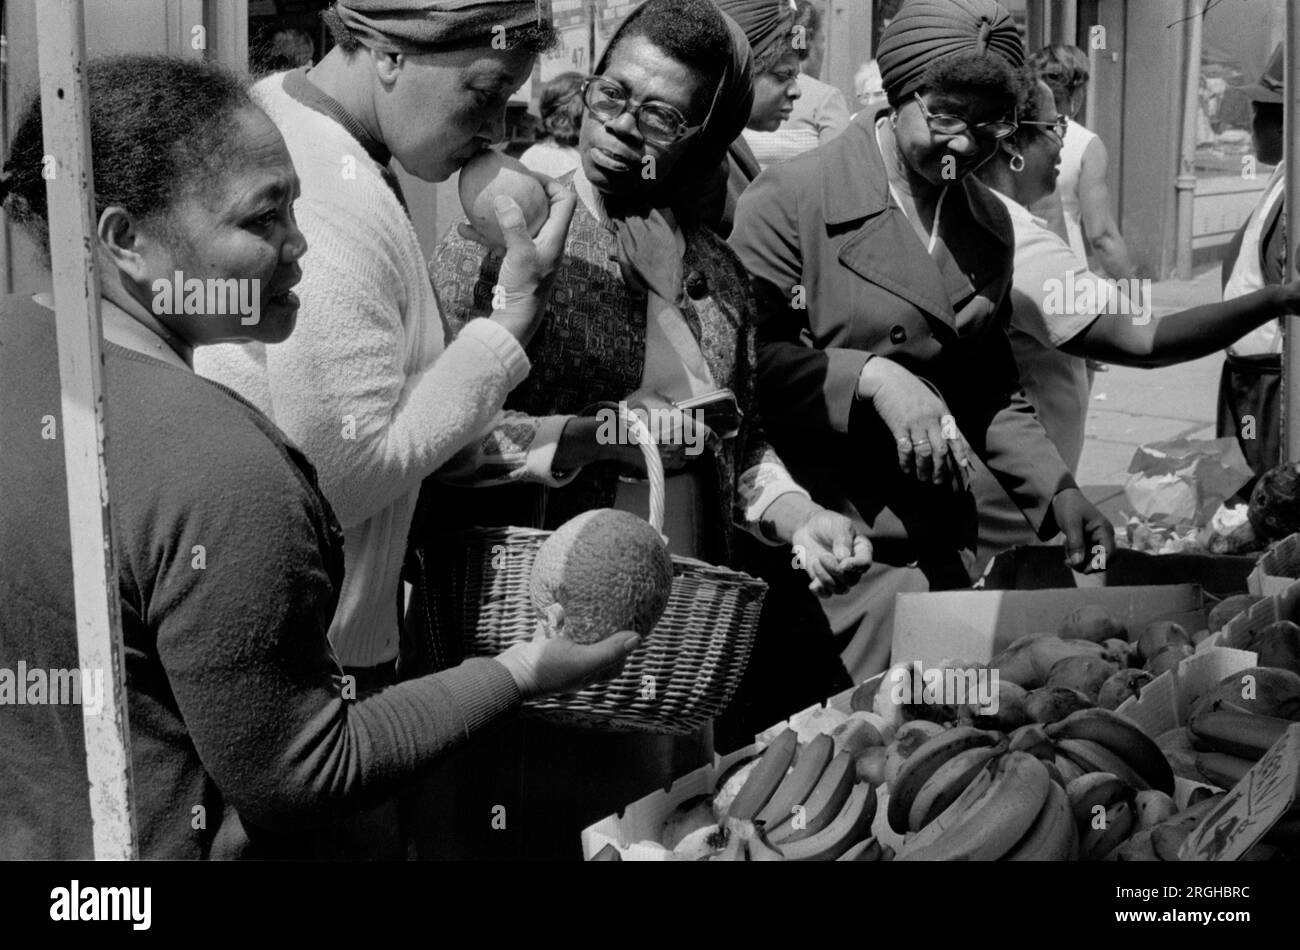 Multiethnisches Großbritannien 1970er Vereinigtes Königreich. Portobello Road Notting Hill London Samstag Marktstand. Eine Gruppe schwarzer britischer Frauen, die Obst kaufen, um zu sehen, ob sie reif sind. 1975, HOMER SYKES Stockfoto